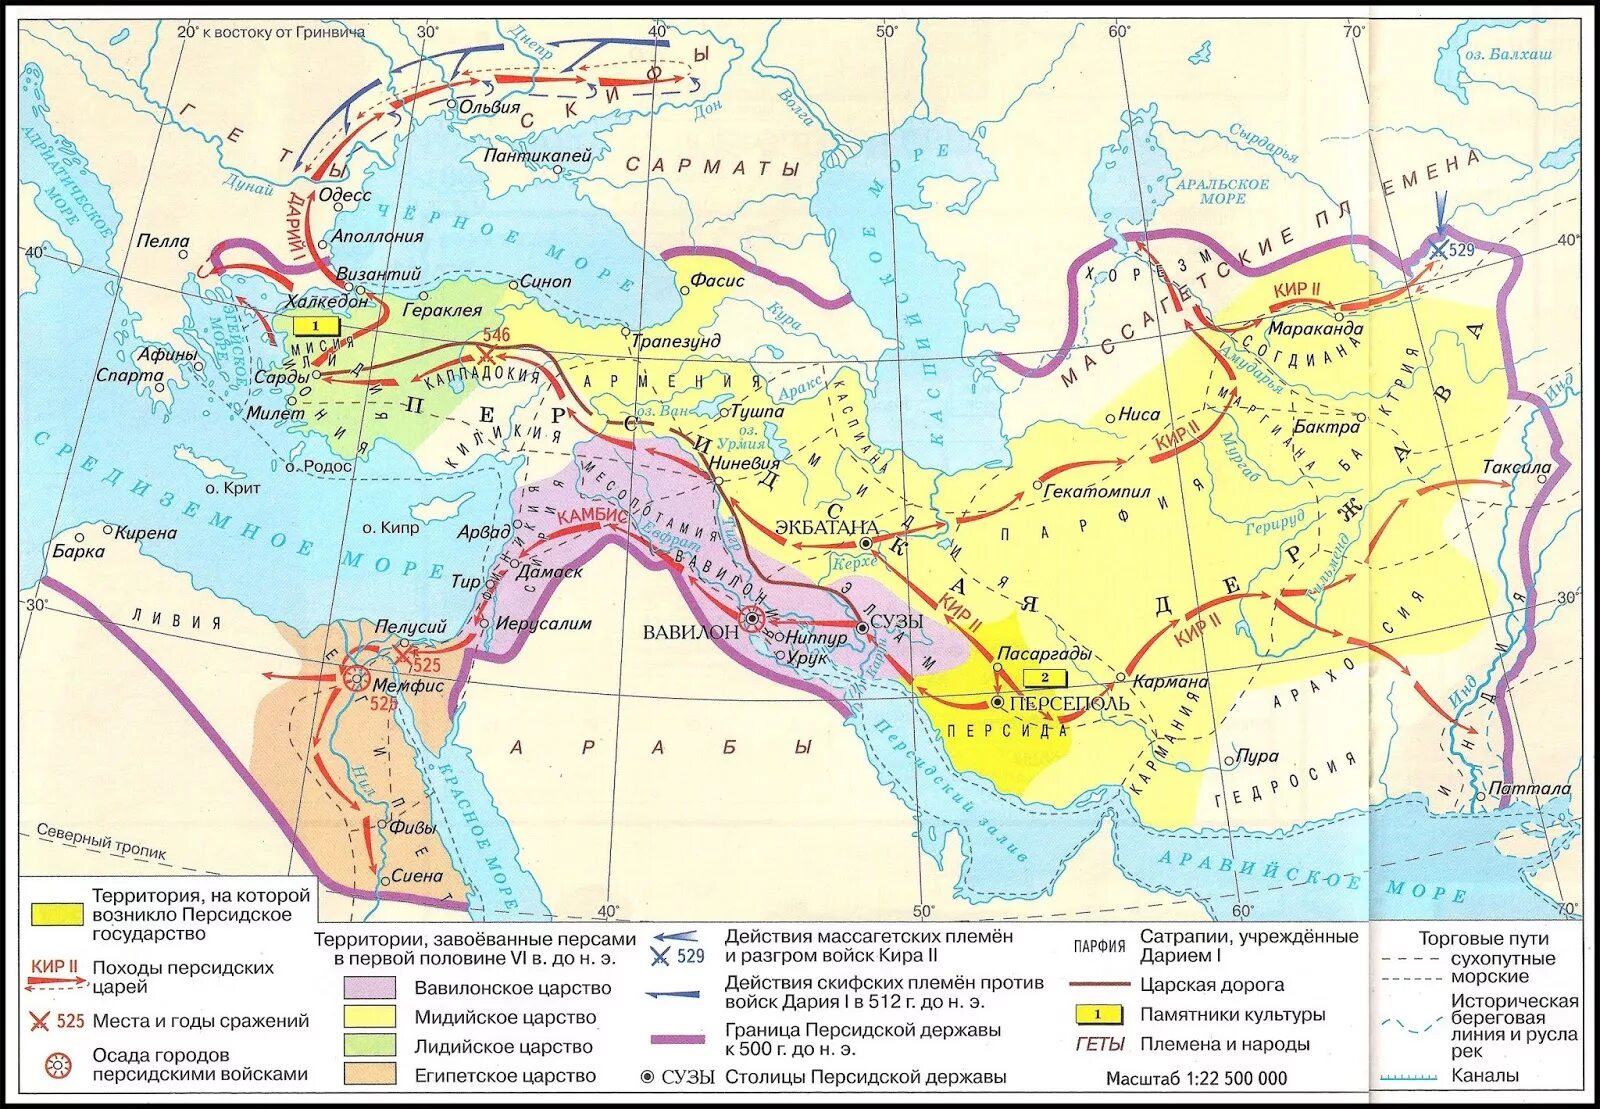 Дарий первый история 5 класс впр. Персидская держава 550-330 гг до н э.